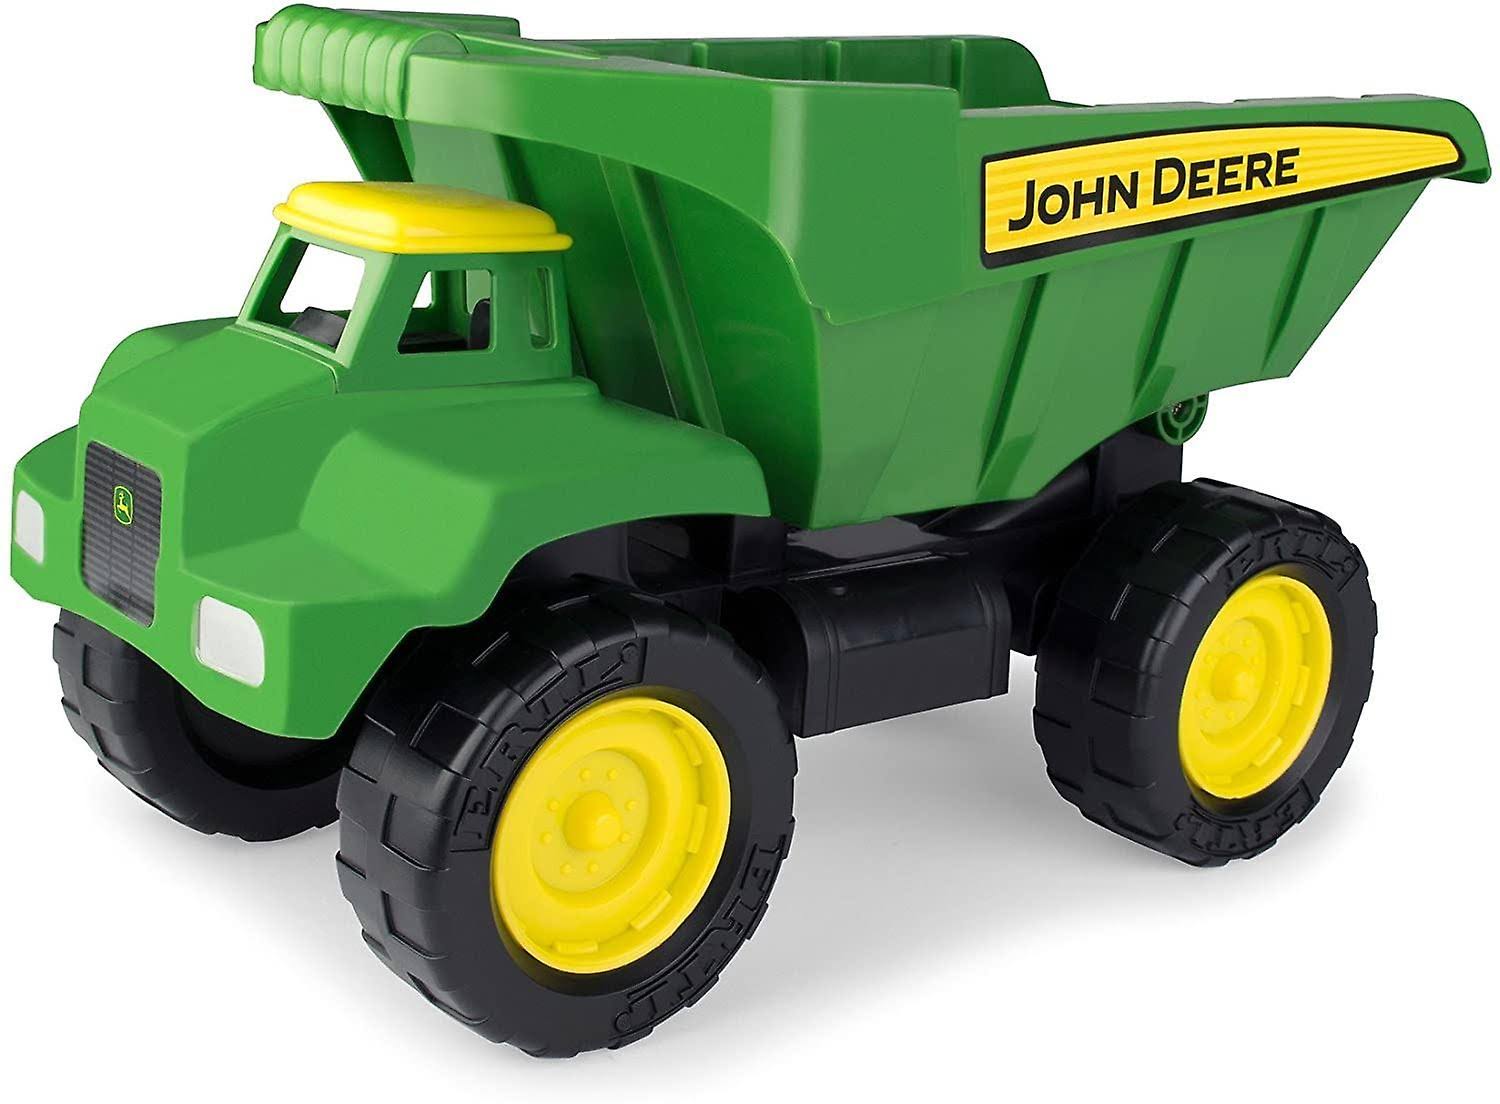 John Deere Big Scoop Dump Truck Toy - 38cm